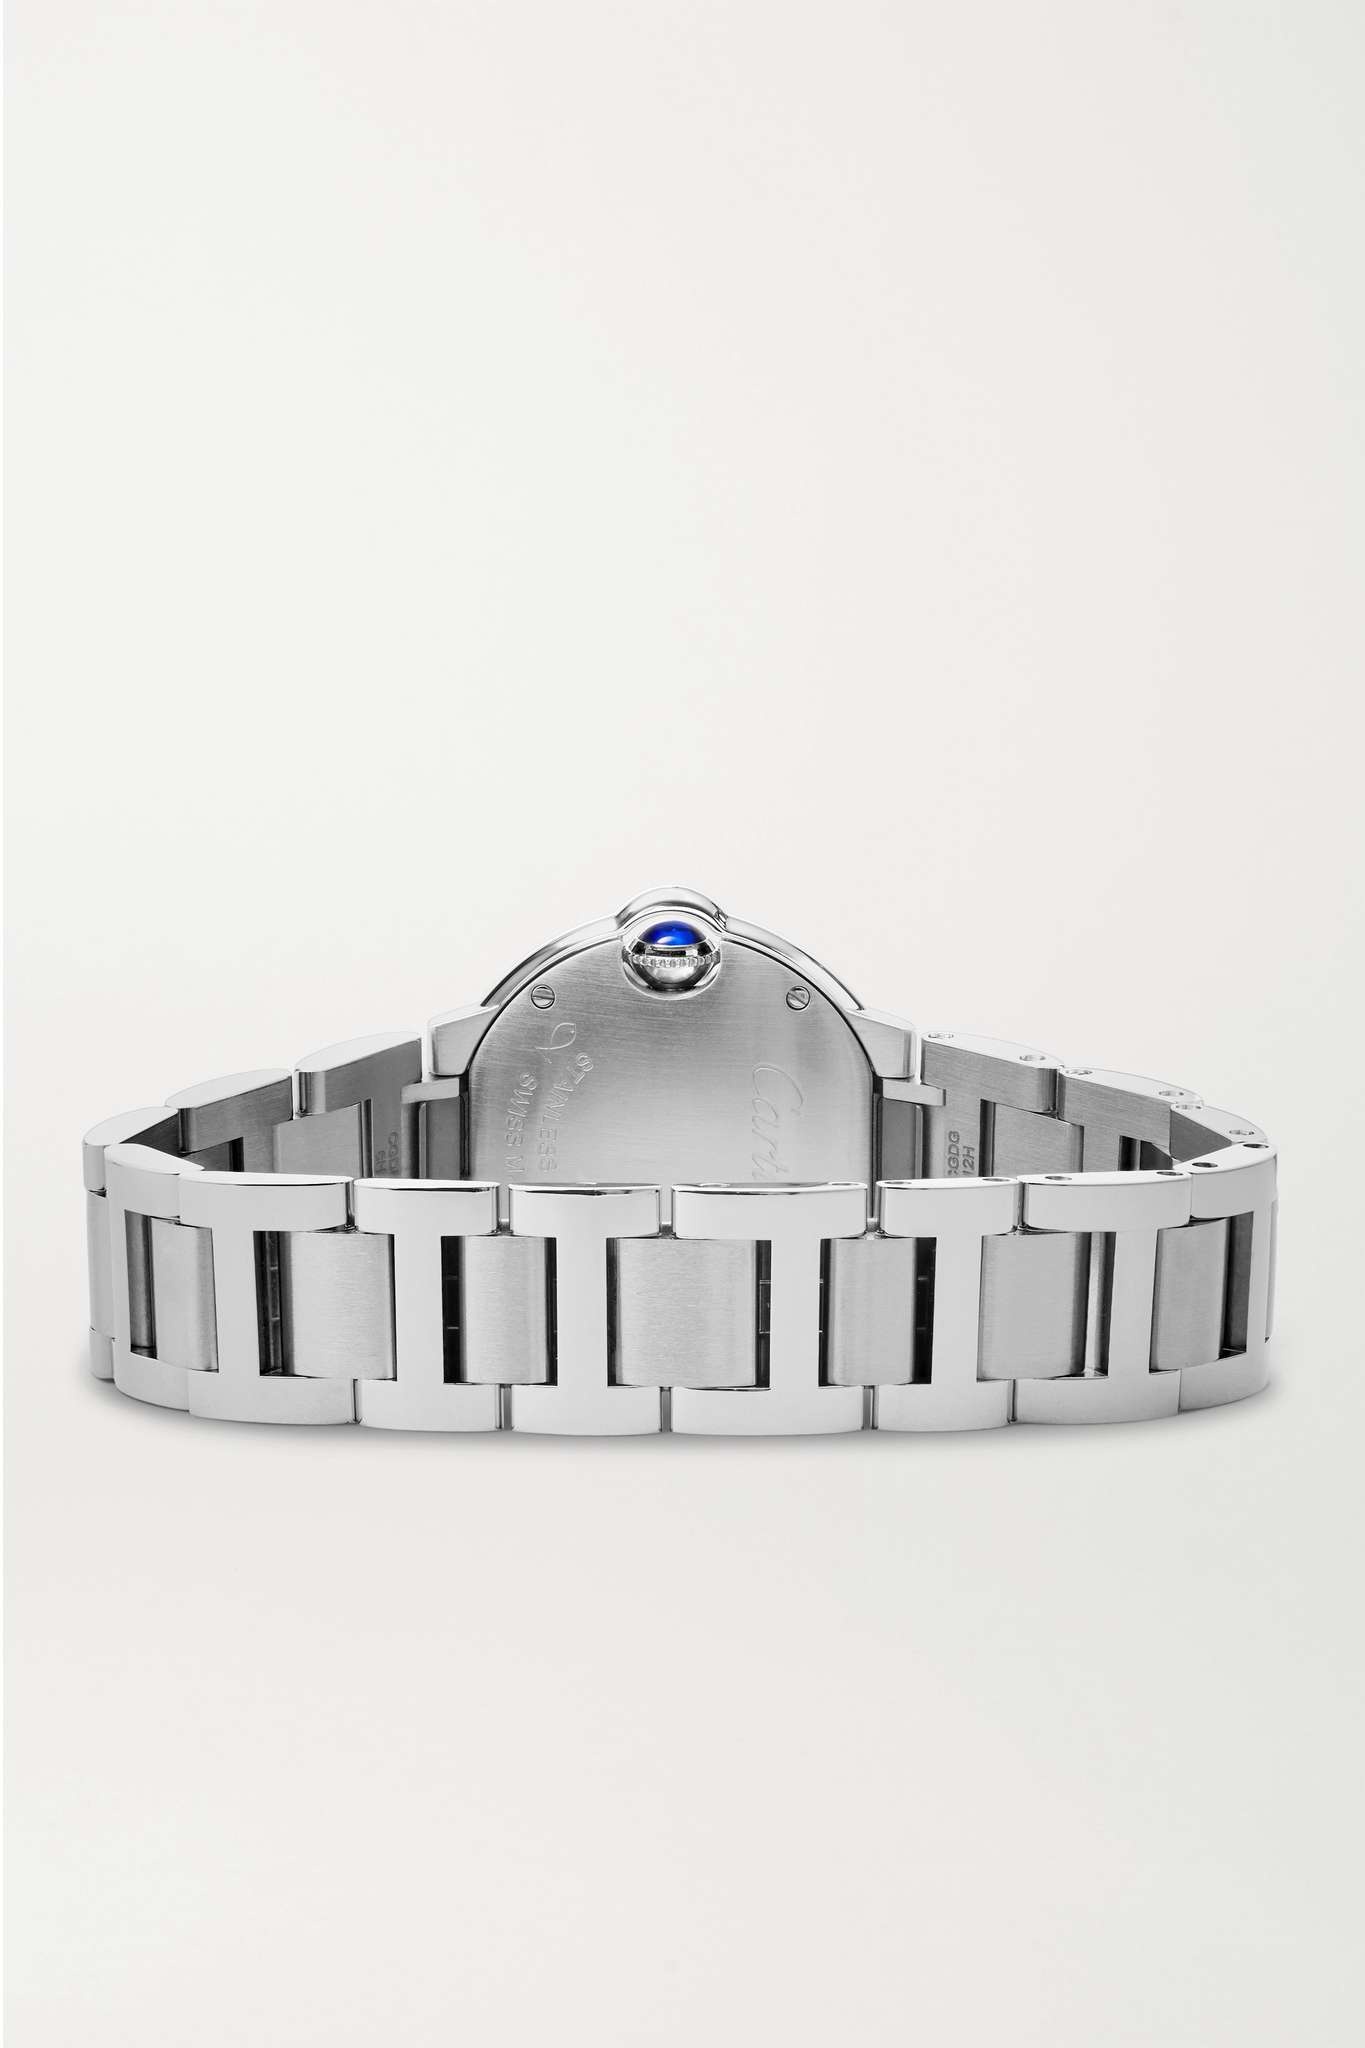 Ballon Bleu de Cartier 28mm stainless steel and diamond watch - 6